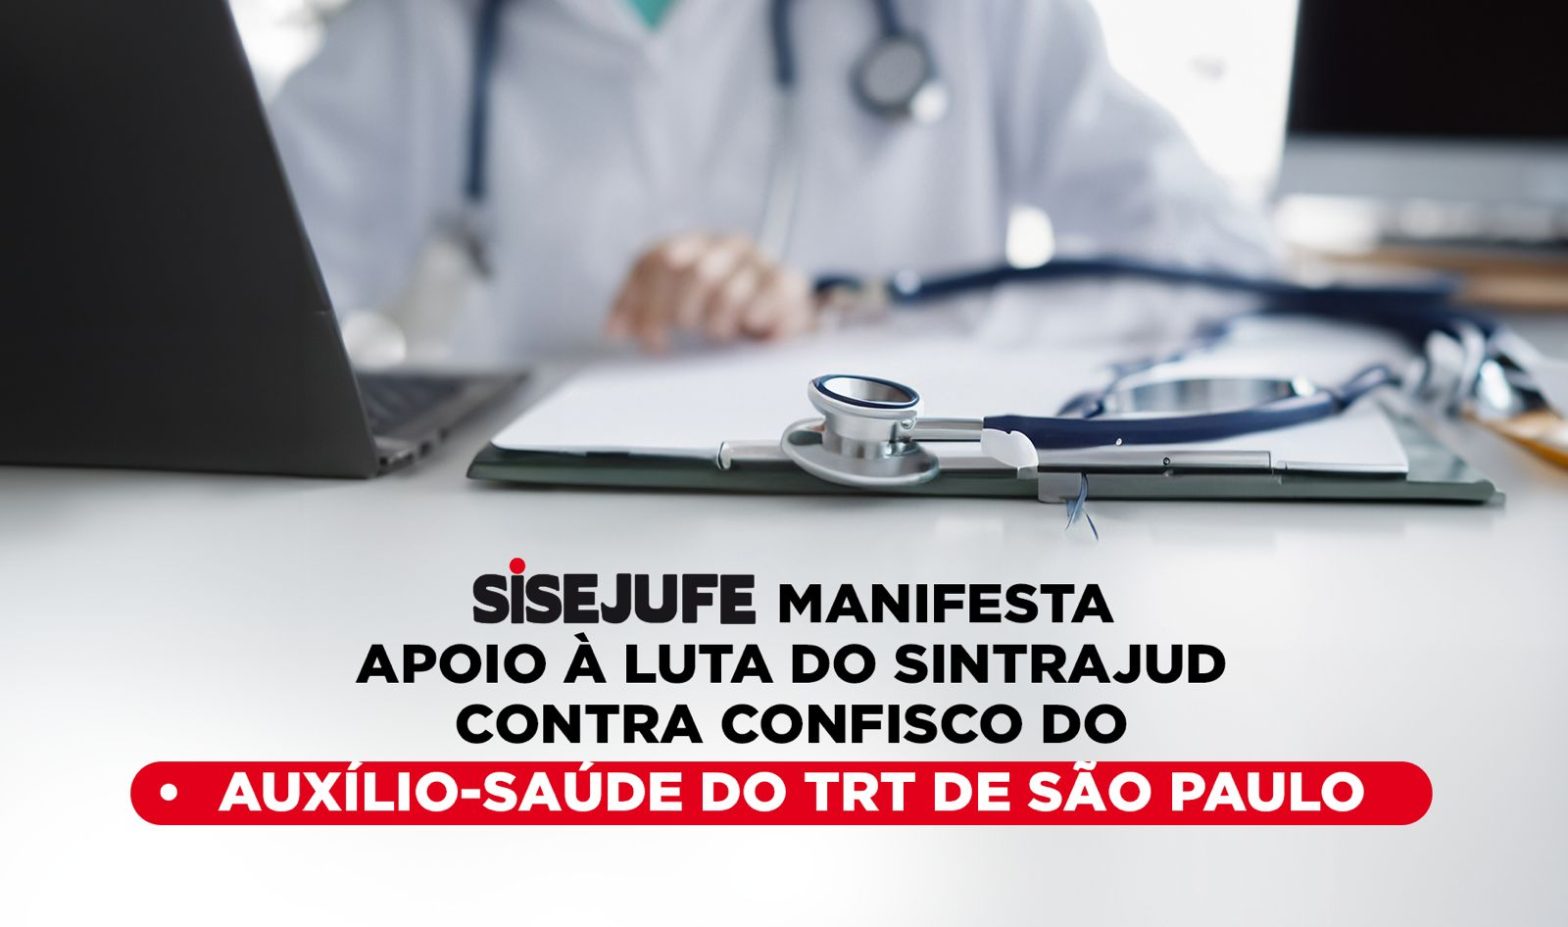 Sisejufe manifesta apoio à luta do Sintrajud contra confisco do auxílio-saúde do TRT de São Paulo, SISEJUFE